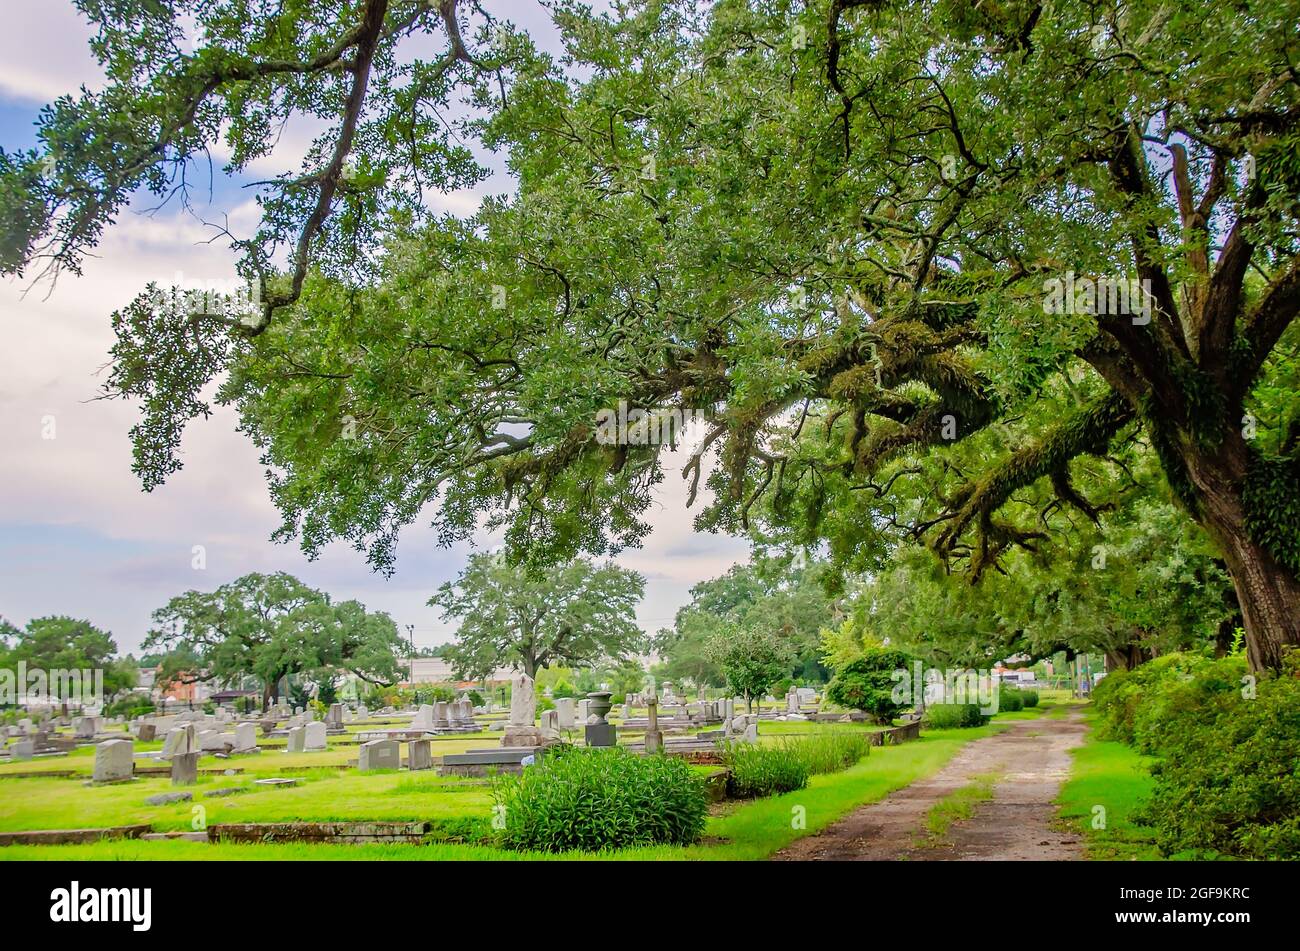 Il cimitero di Magnolia presenta tombe ornate circondate da secolari querce del sud, 14 agosto 2021, a Mobile, Alabama. Foto Stock